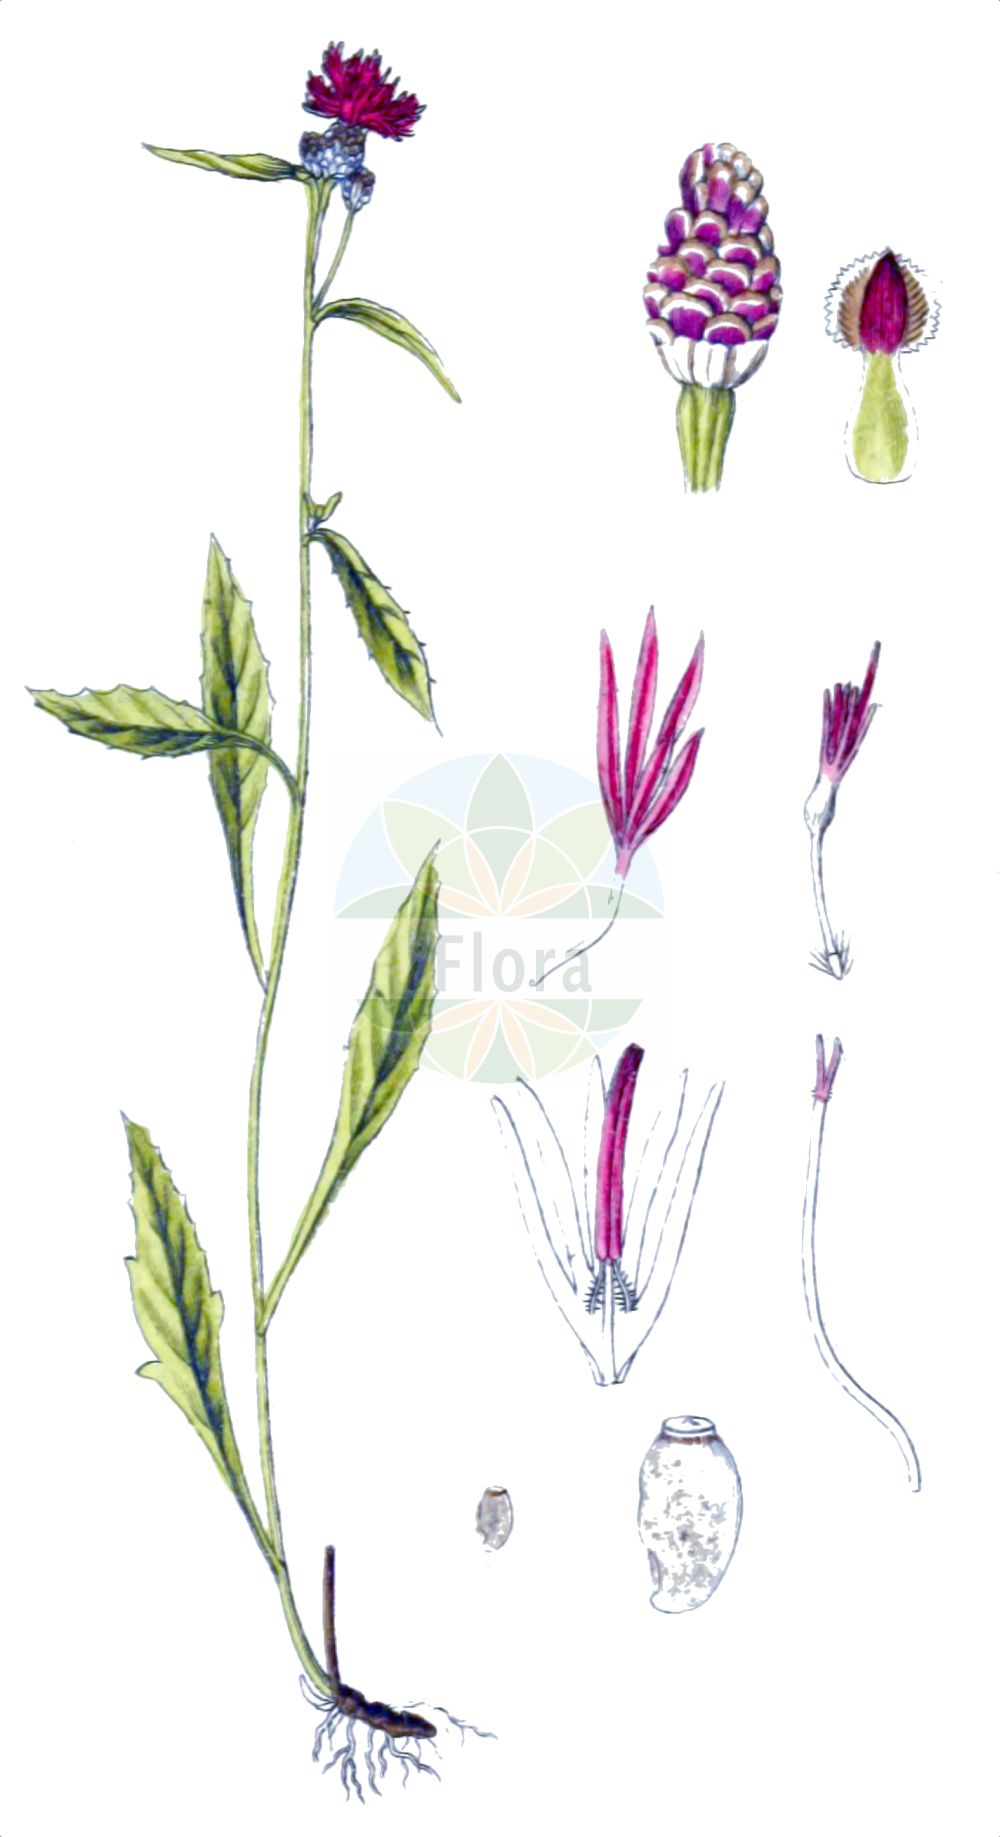 Historische Abbildung von Centaurea jacea (Wiesen-Flockenblume - Brown Knapweed). Das Bild zeigt Blatt, Bluete, Frucht und Same. ---- Historical Drawing of Centaurea jacea (Wiesen-Flockenblume - Brown Knapweed). The image is showing leaf, flower, fruit and seed.(Centaurea jacea,Wiesen-Flockenblume,Brown Knapweed,Centaurea jacea,Centaurea pratensis,Centaurea variabilis,Jacea pratensis,Jacea tomentosa,,Wiesen-Flockenblume,Gewoehnliche Wiesen-Flockenblume,Brown Knapweed,Brownray Knapweed,Centaurea,Flockenblume,Knapweed,Asteraceae,Korbblütengewächse,Daisy family,Blatt,Bluete,Frucht,Same,leaf,flower,fruit,seed,Sturm (1796f))